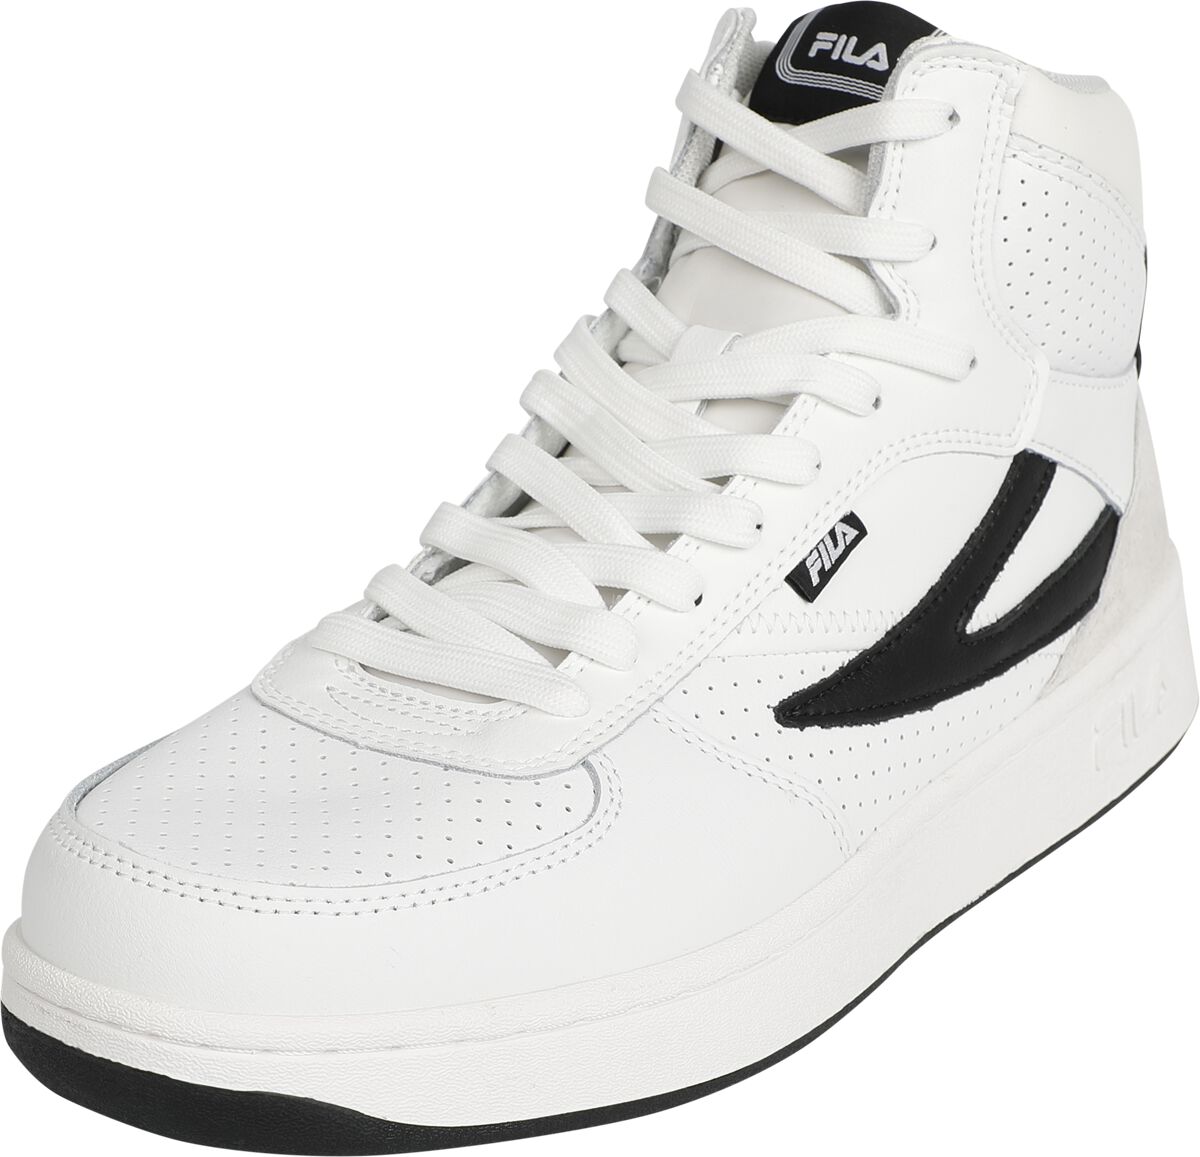 Fila FILA SEVARO mid Sneaker high weiß schwarz in EU43